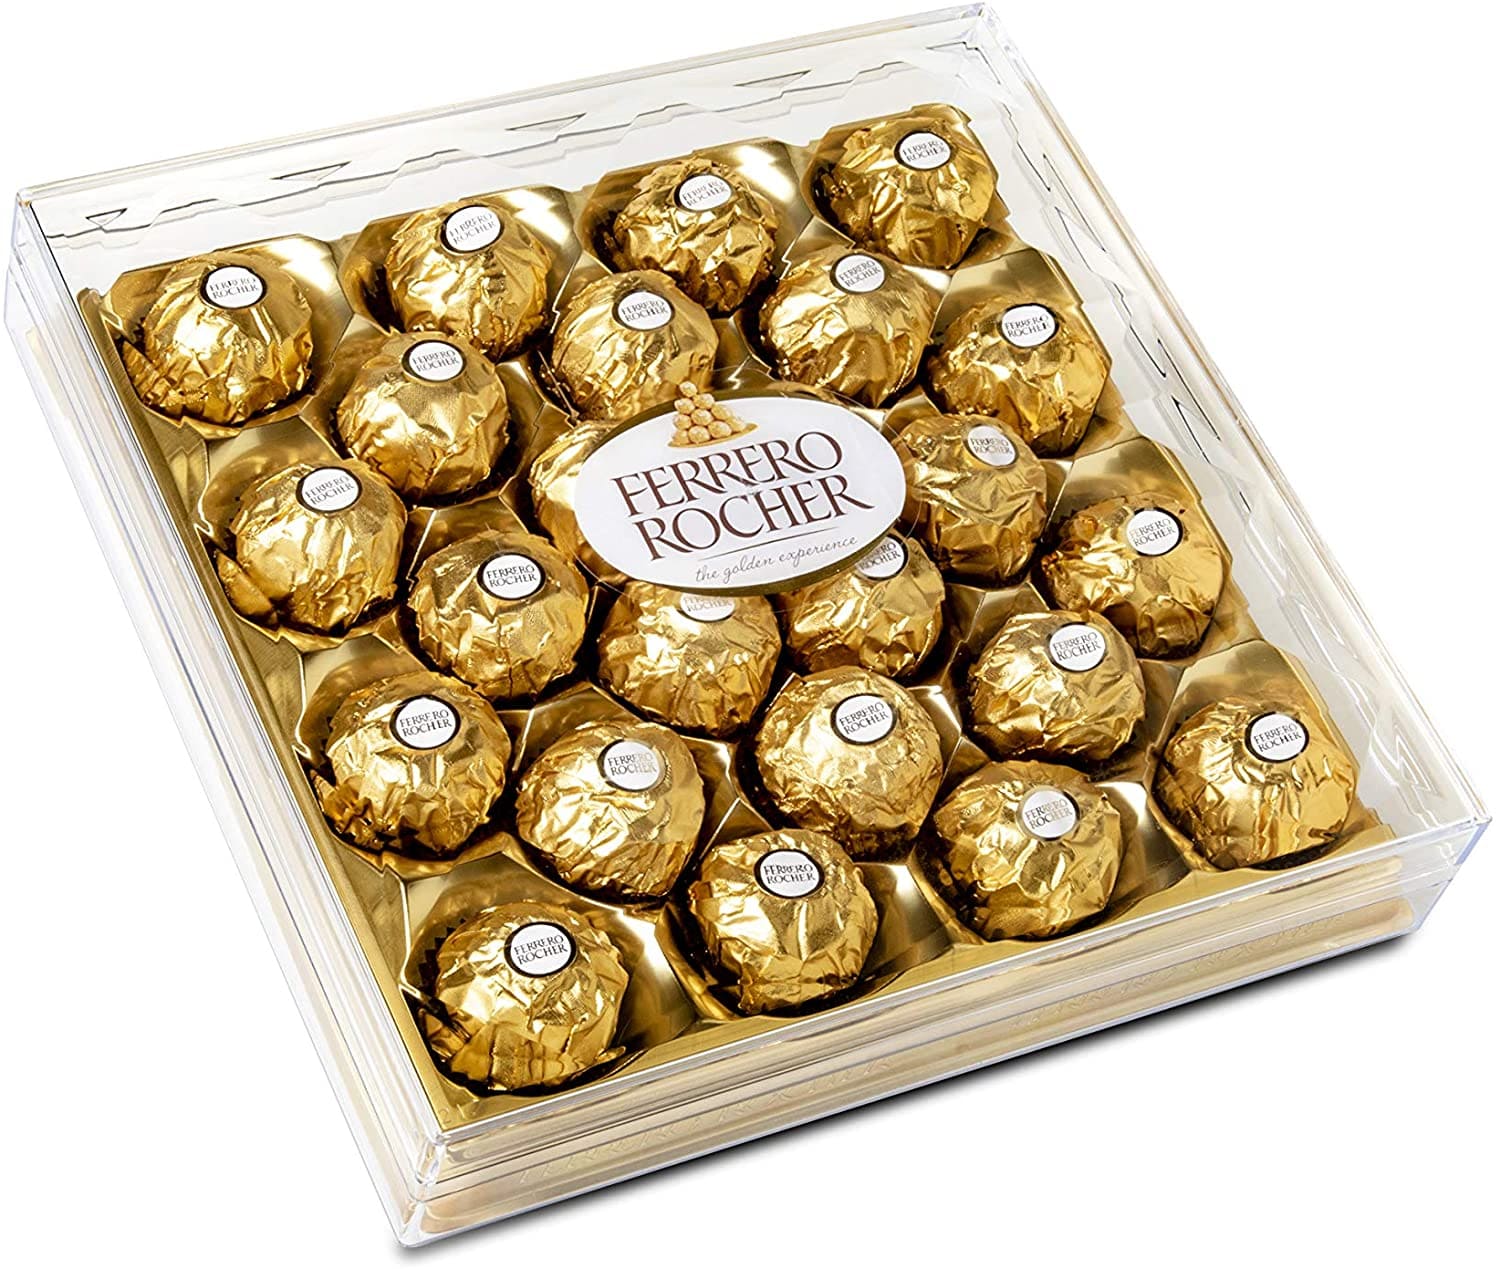 Imagen de Ferrero caja 24 unidades Descripcion: Caja de chocolates ferreros grande 24 unidades